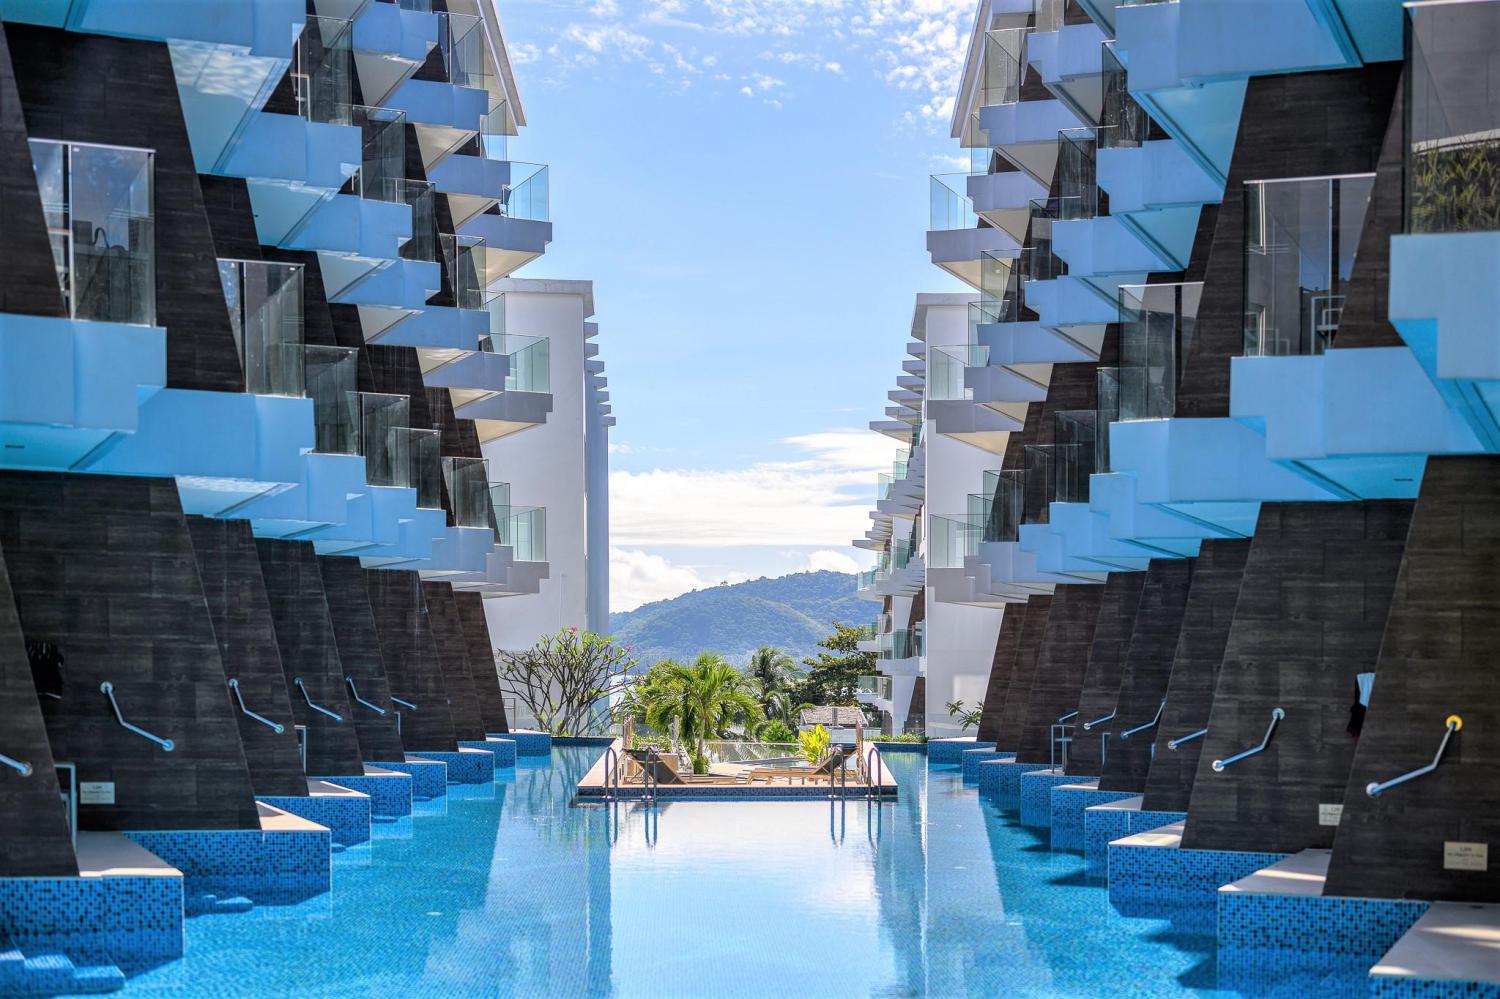 The Beachfront Hotel Phuket, Rawai Beach - Image 1